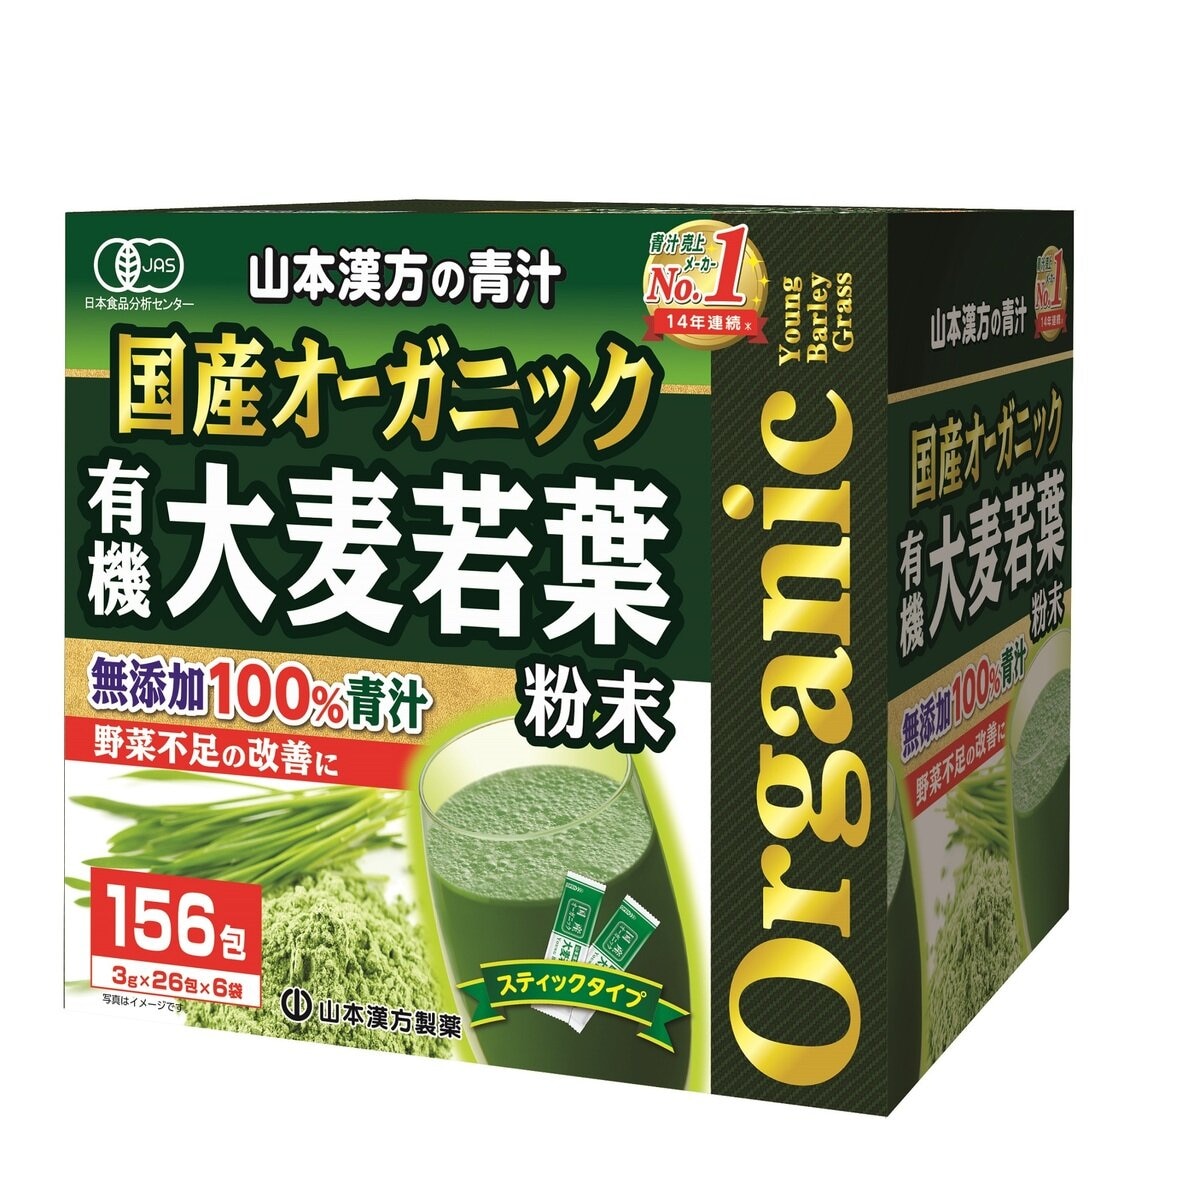 国産 無添加 100% オーガニック 青汁 3g x 156包入 | Costco Japan